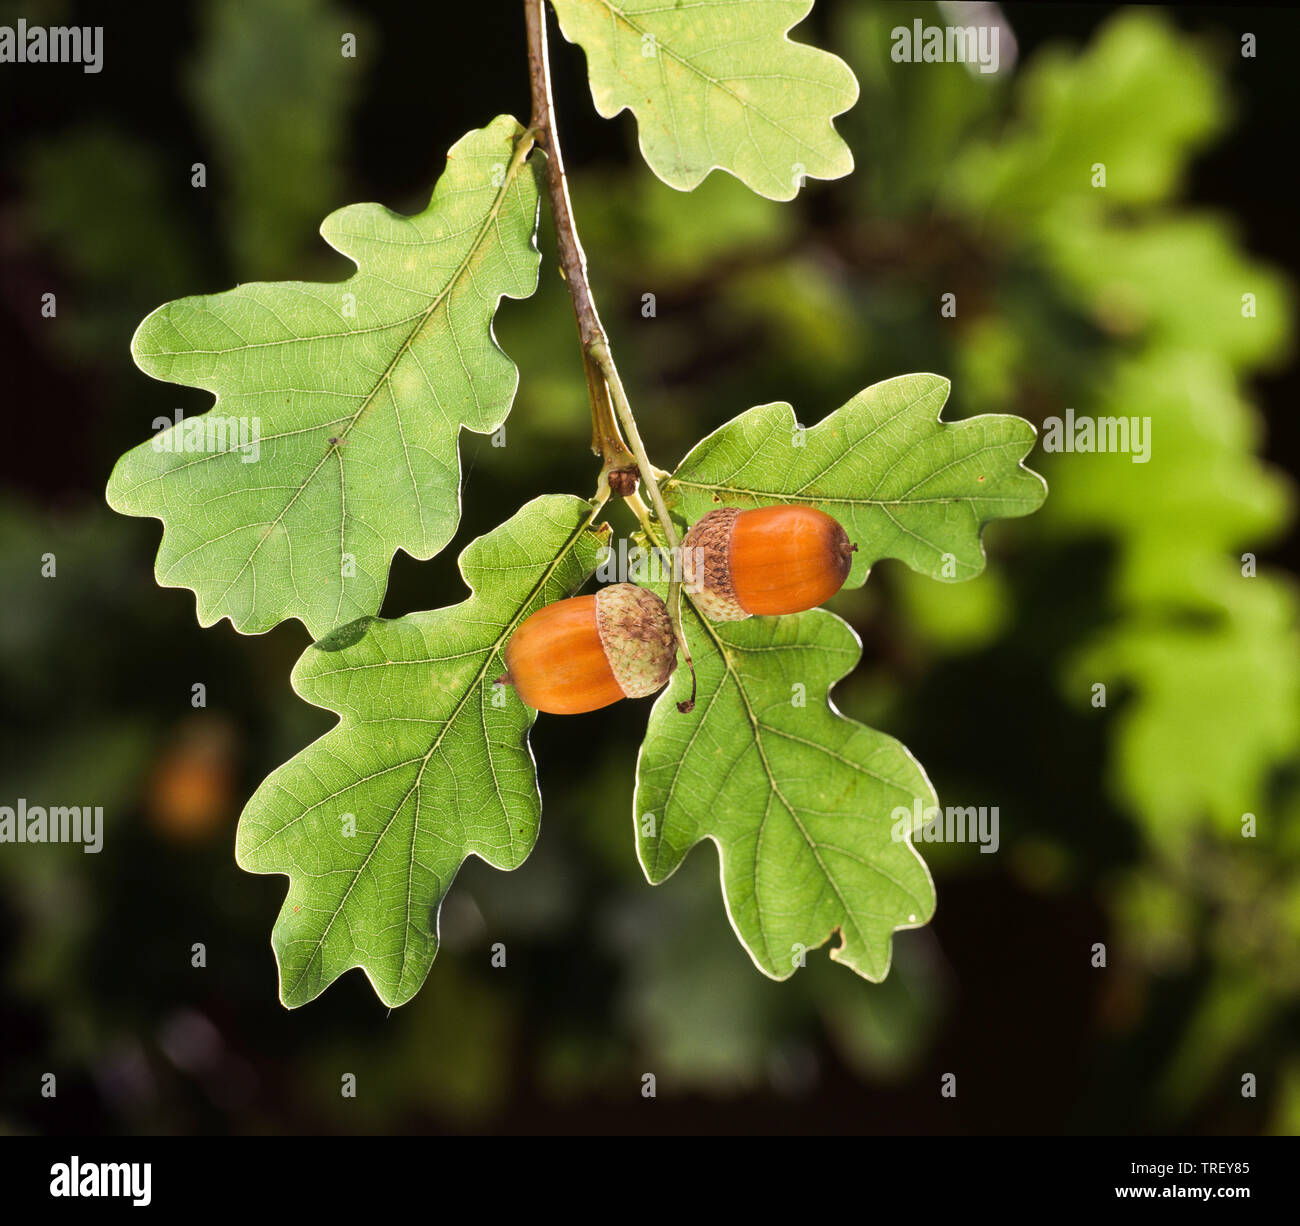 Le chêne commun, le chêne pédonculé (Quercus robur). Acorn sur une branche en automne. Allemagne Banque D'Images